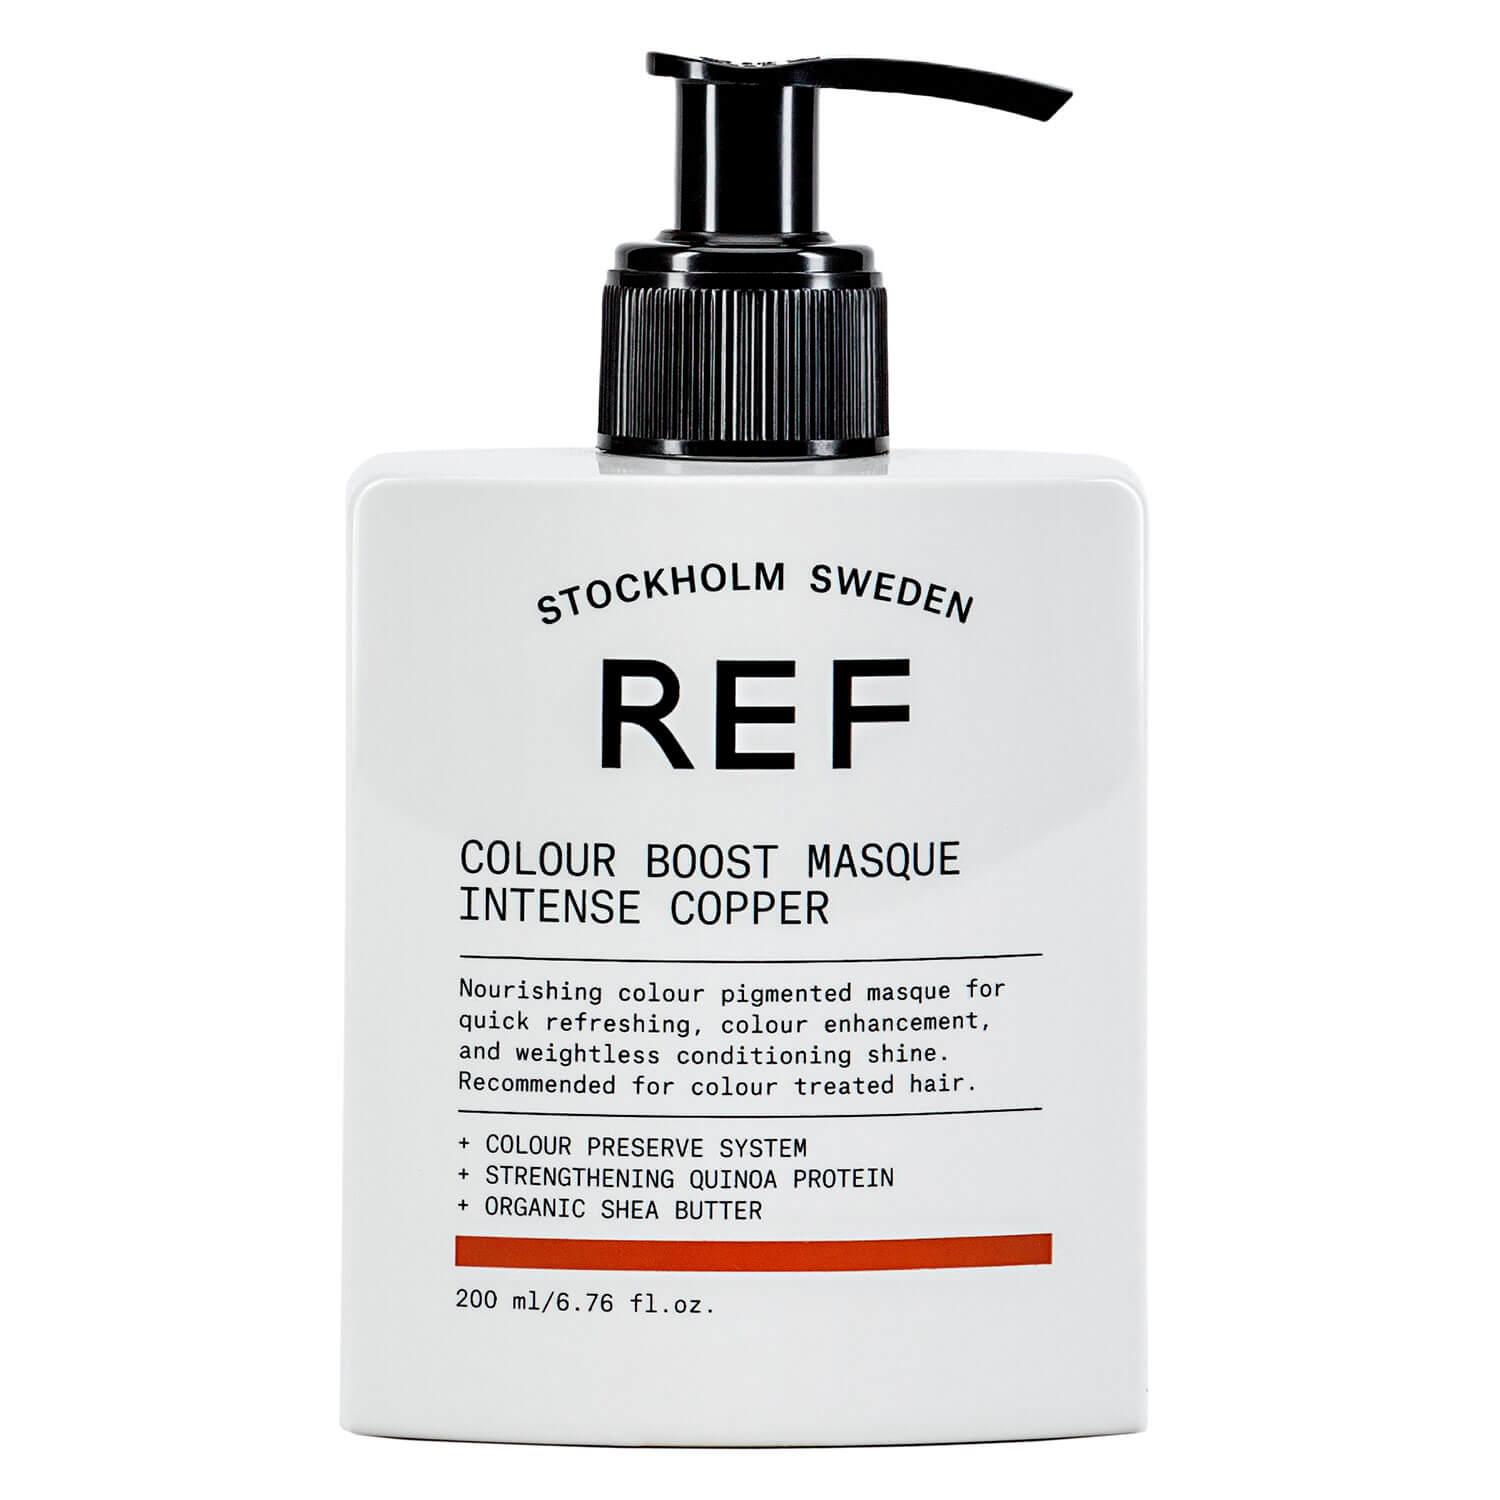 REF Treatment - Colour Boost Masque Intense Copper